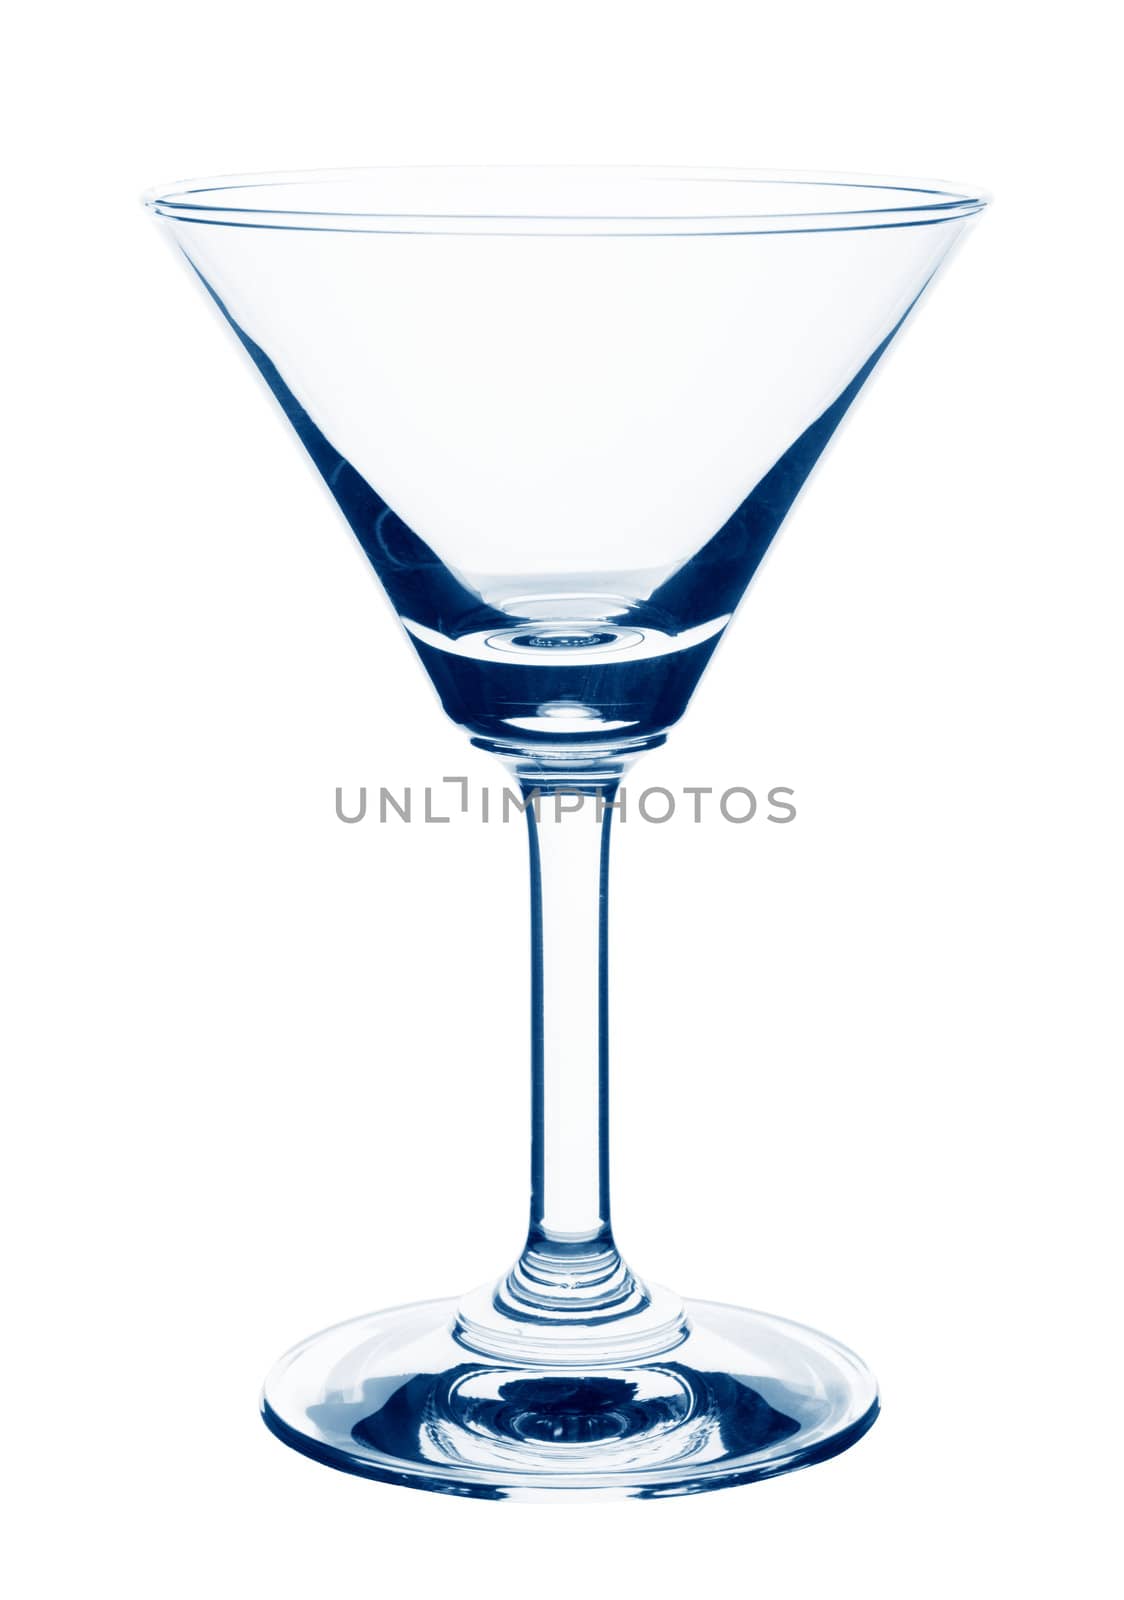 Empty glass of martini by szefei